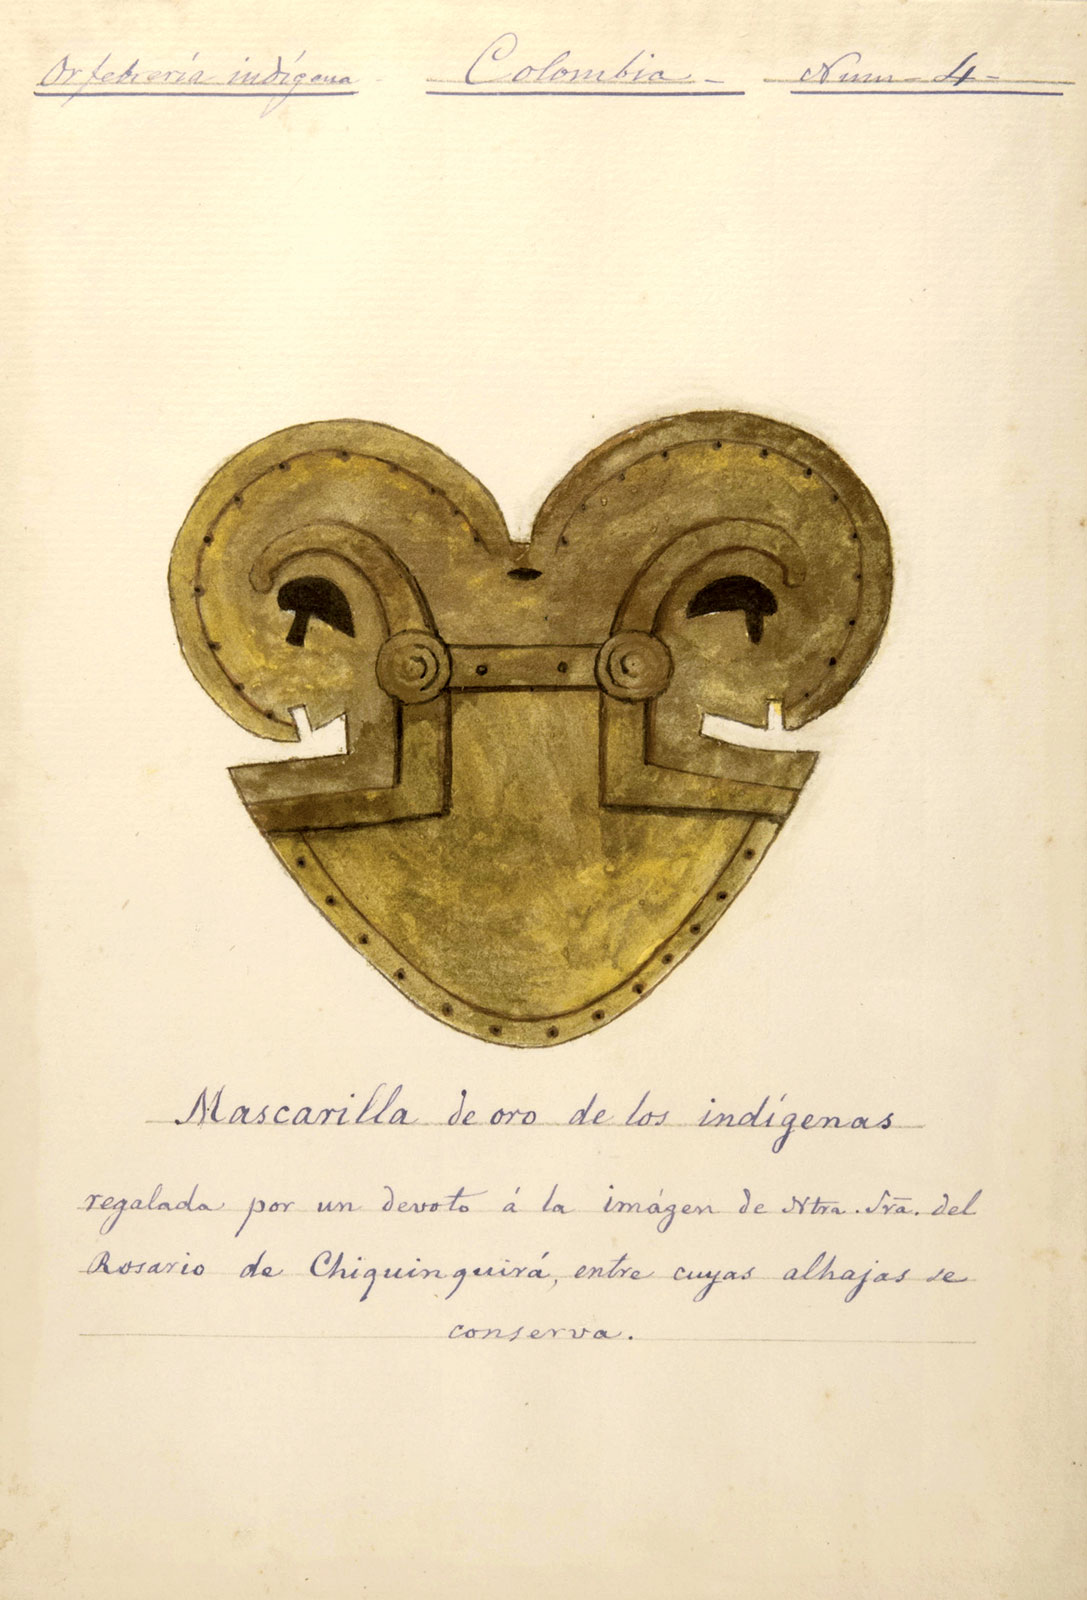 Mascarilla de oro de los indígenas, en José María Gutiérrez, *Impresiones de un viaje a América*, 1875. Banco de la República